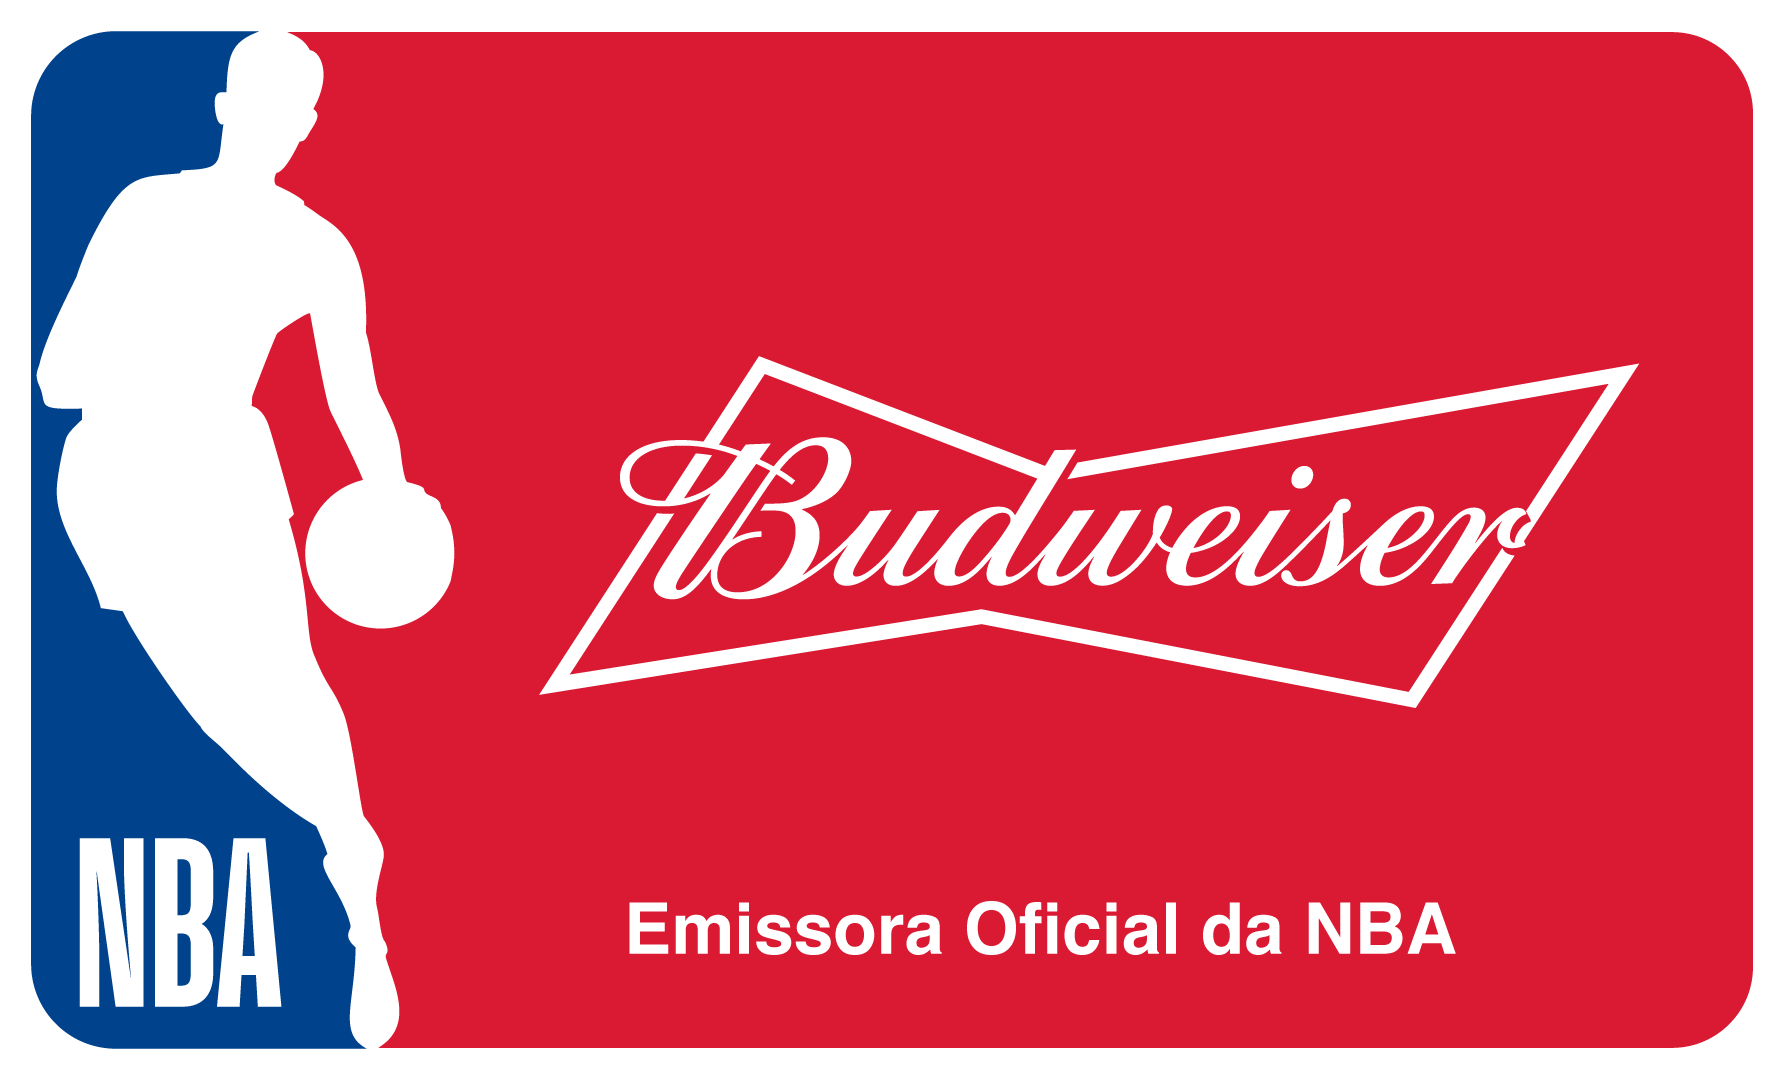 NBA e Budweiser ampliam parceria em acordo inédito para transmissão de jogos e produção de conteúdos exclusivos